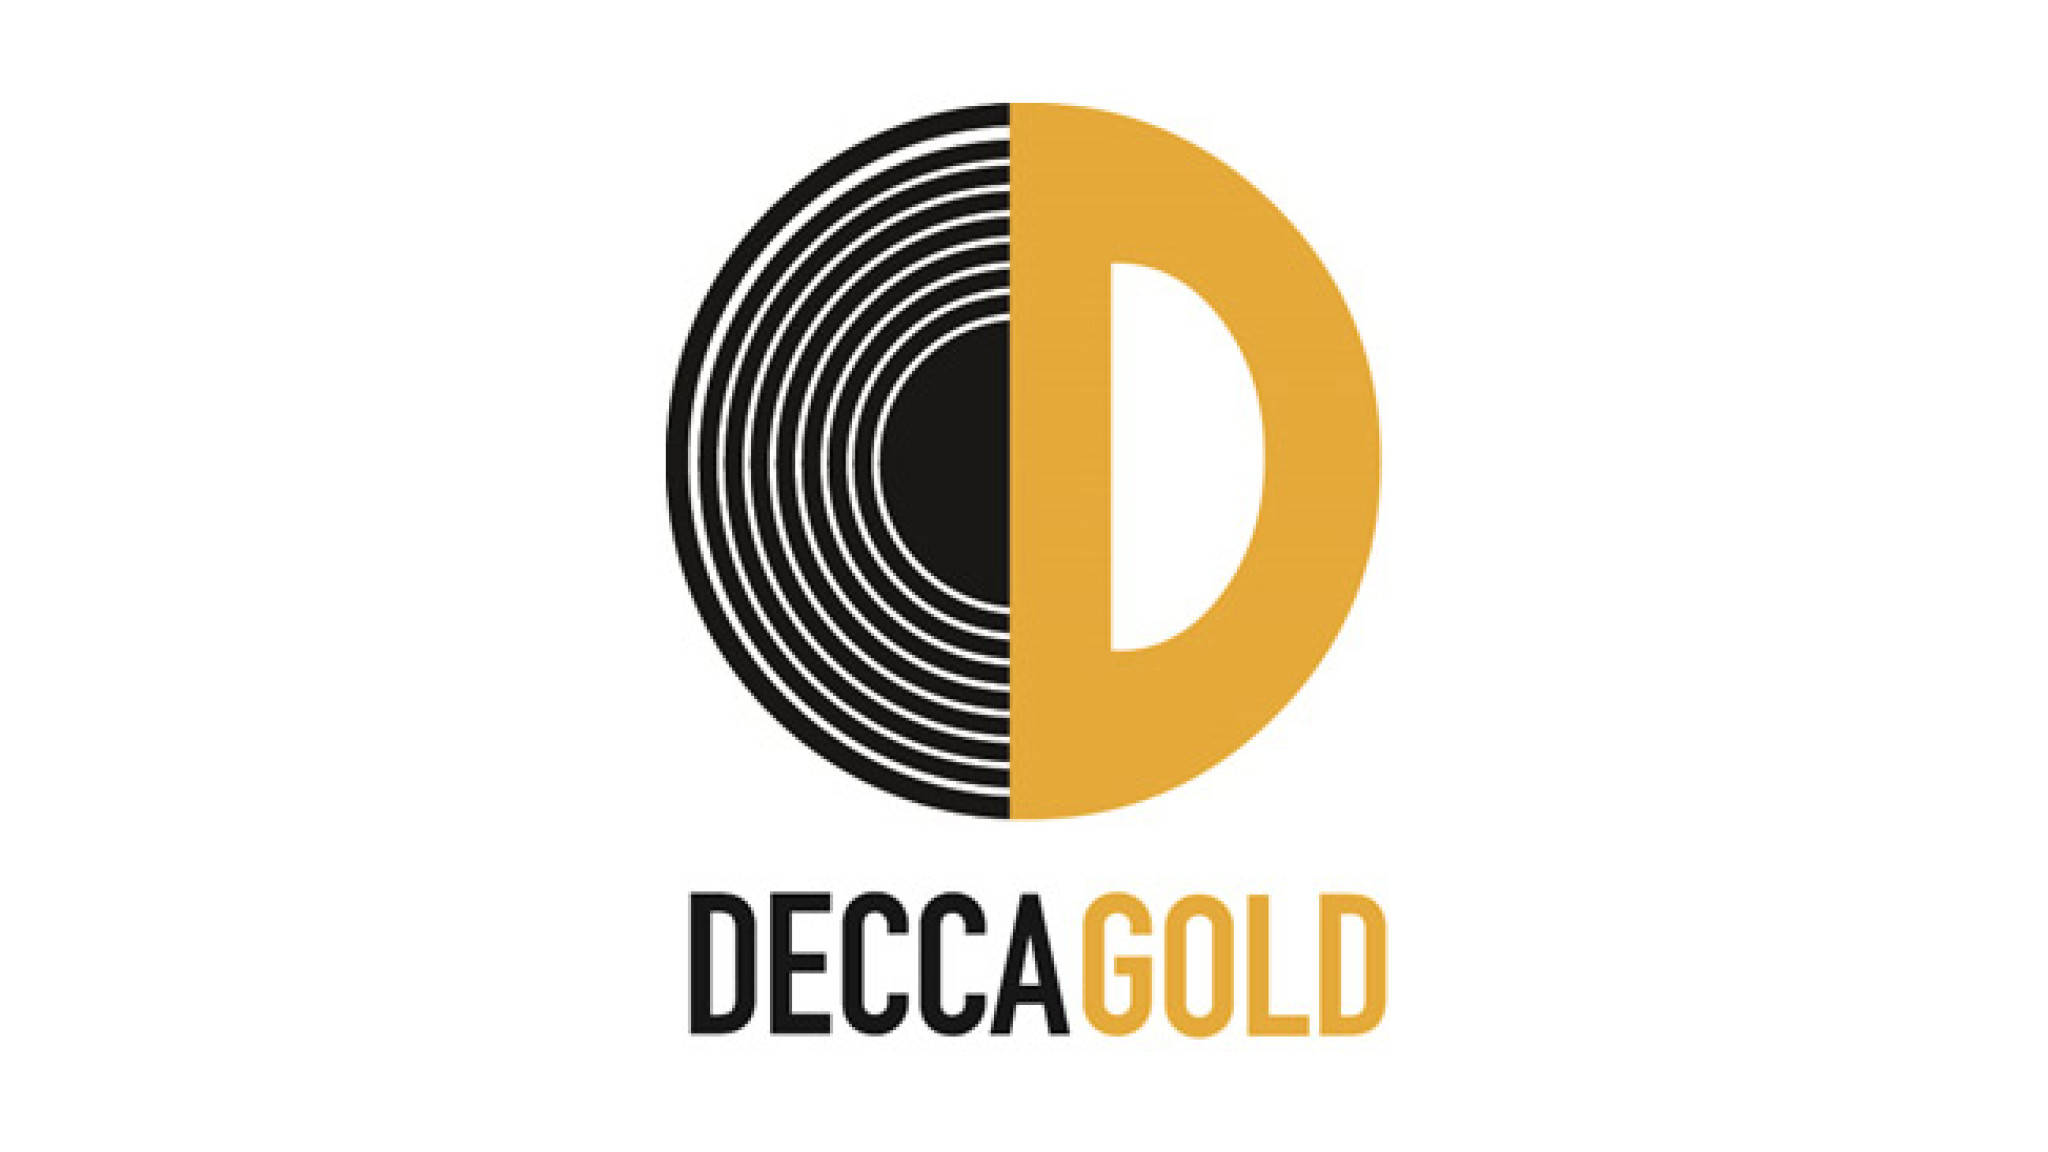 Decca Gold